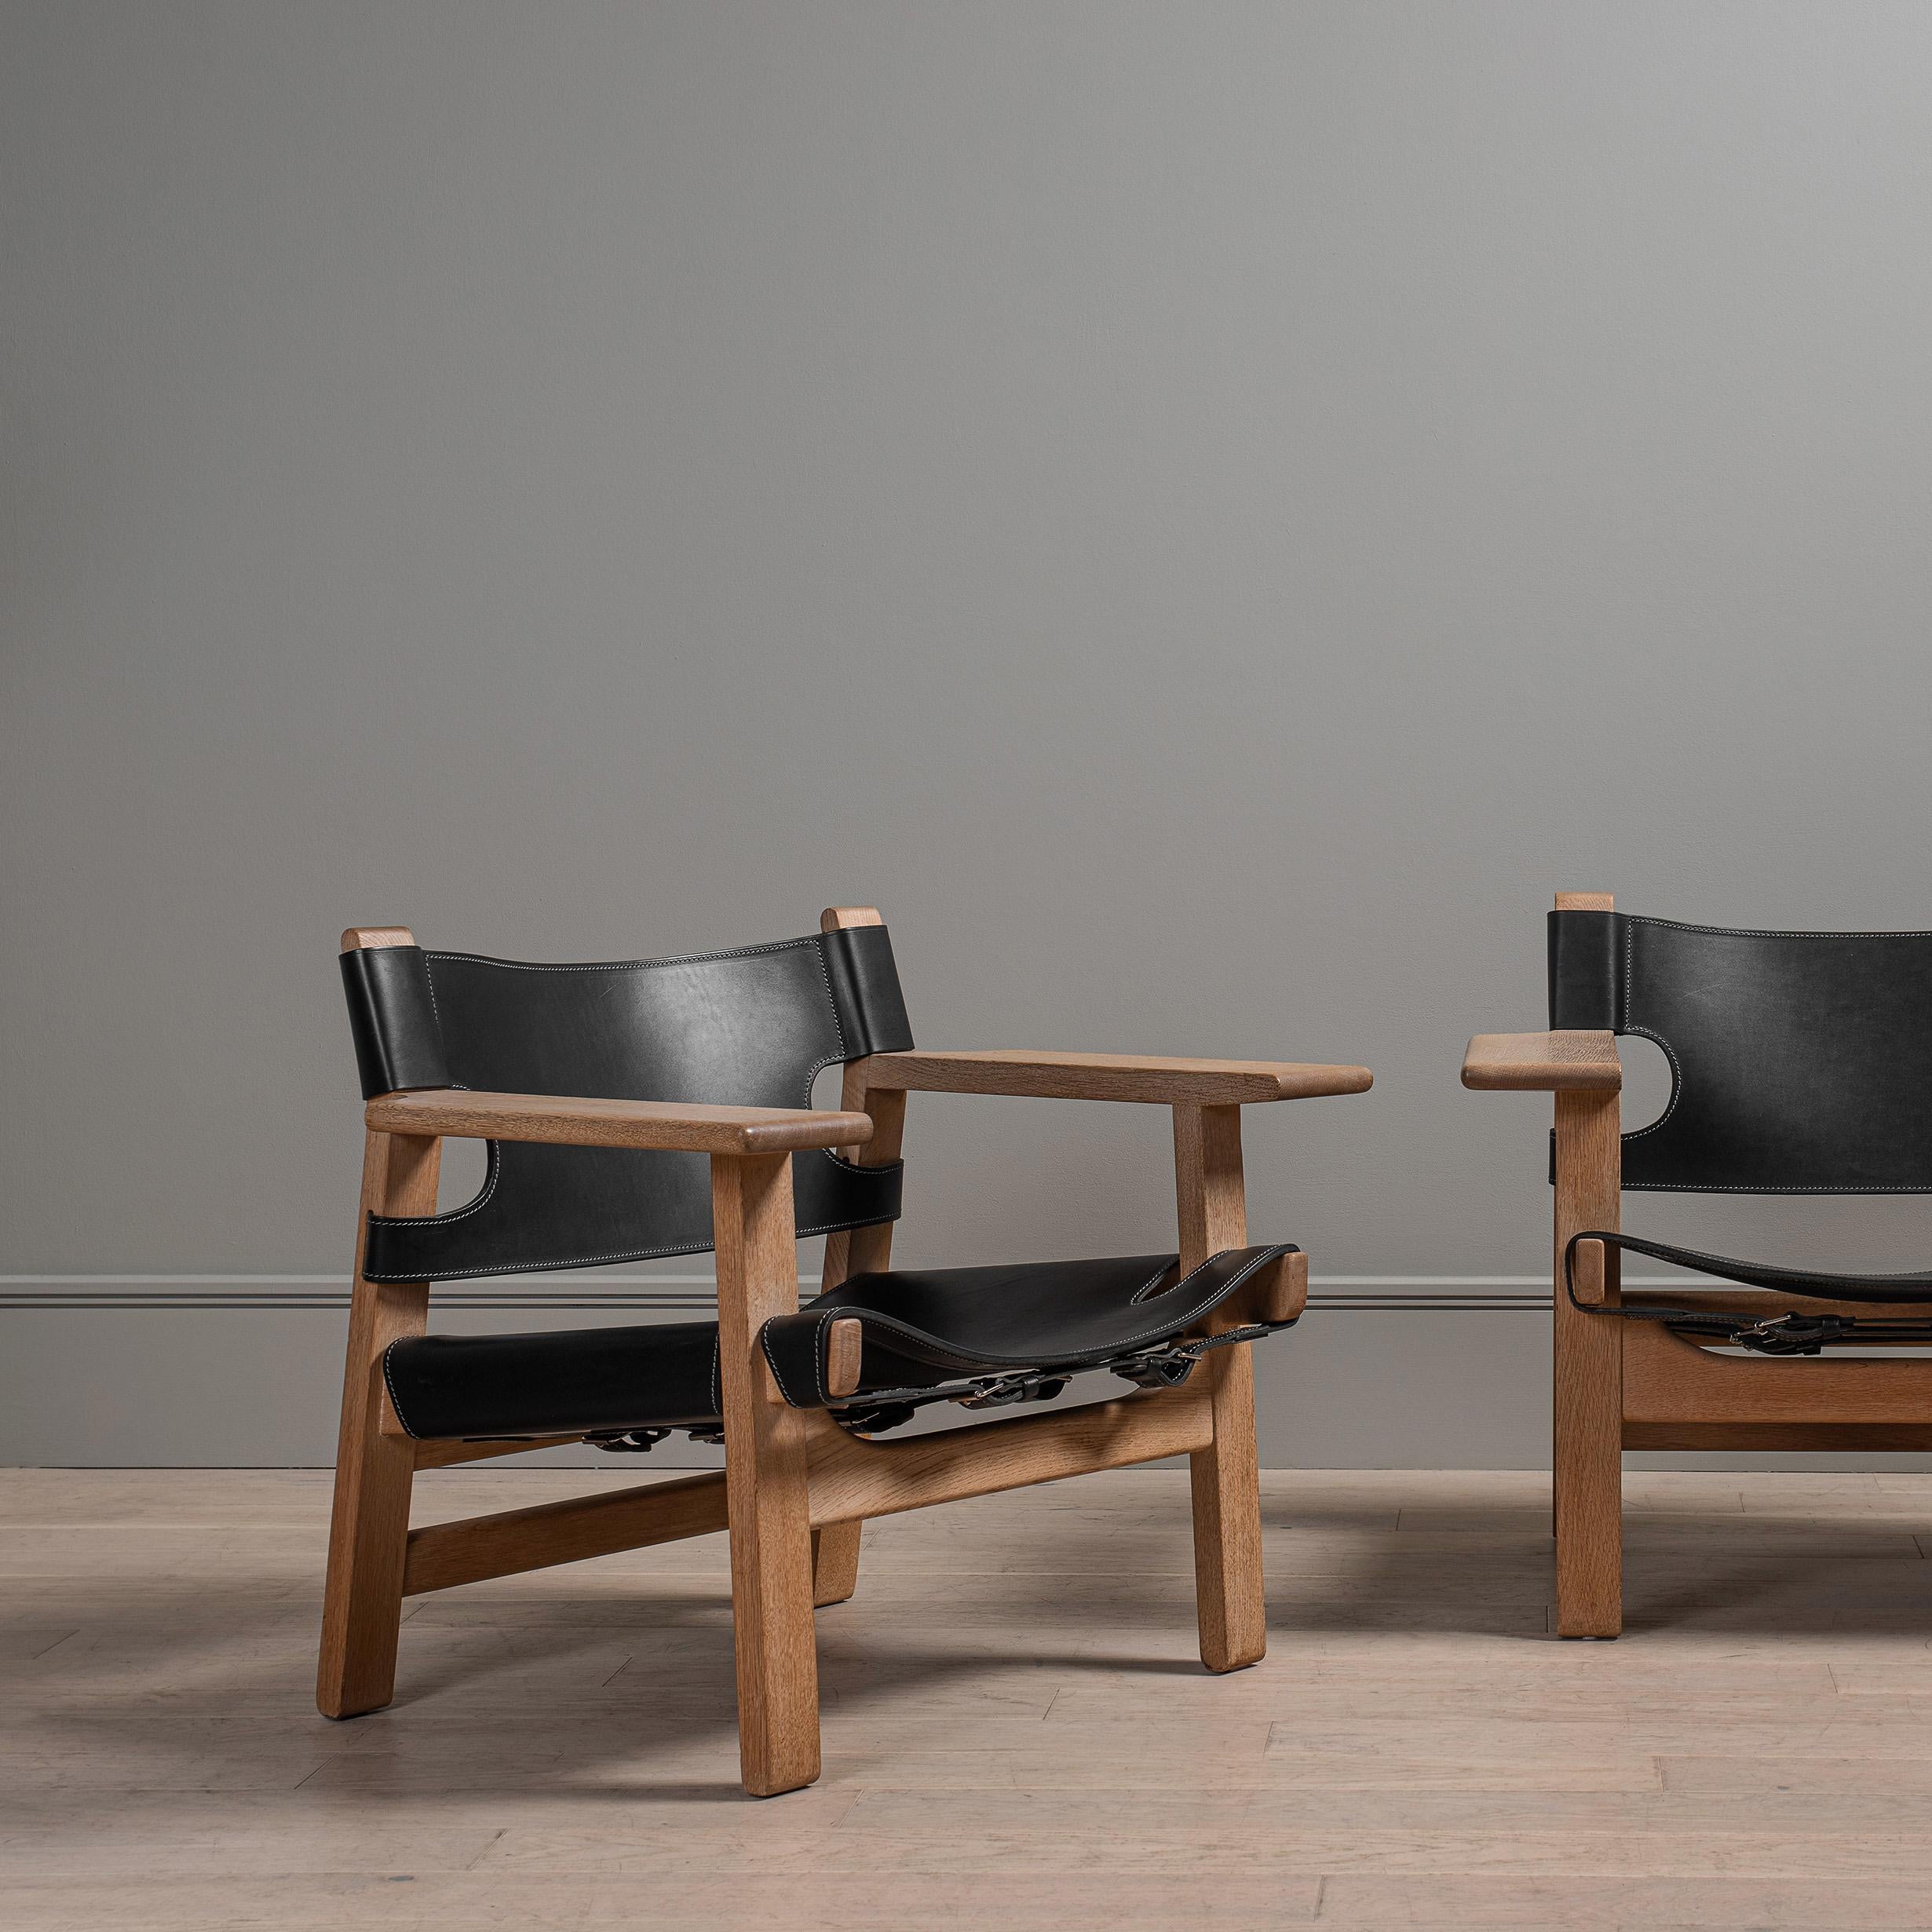 La chaise espagnole de Borg 1958. Il s'agit de l'un de ses plus grands designs, largement plébiscité. Il s'agit des versions originales des fabricants de Fredericia, que l'on peut distinguer par la construction précoce du cadre. Cadre en chêne